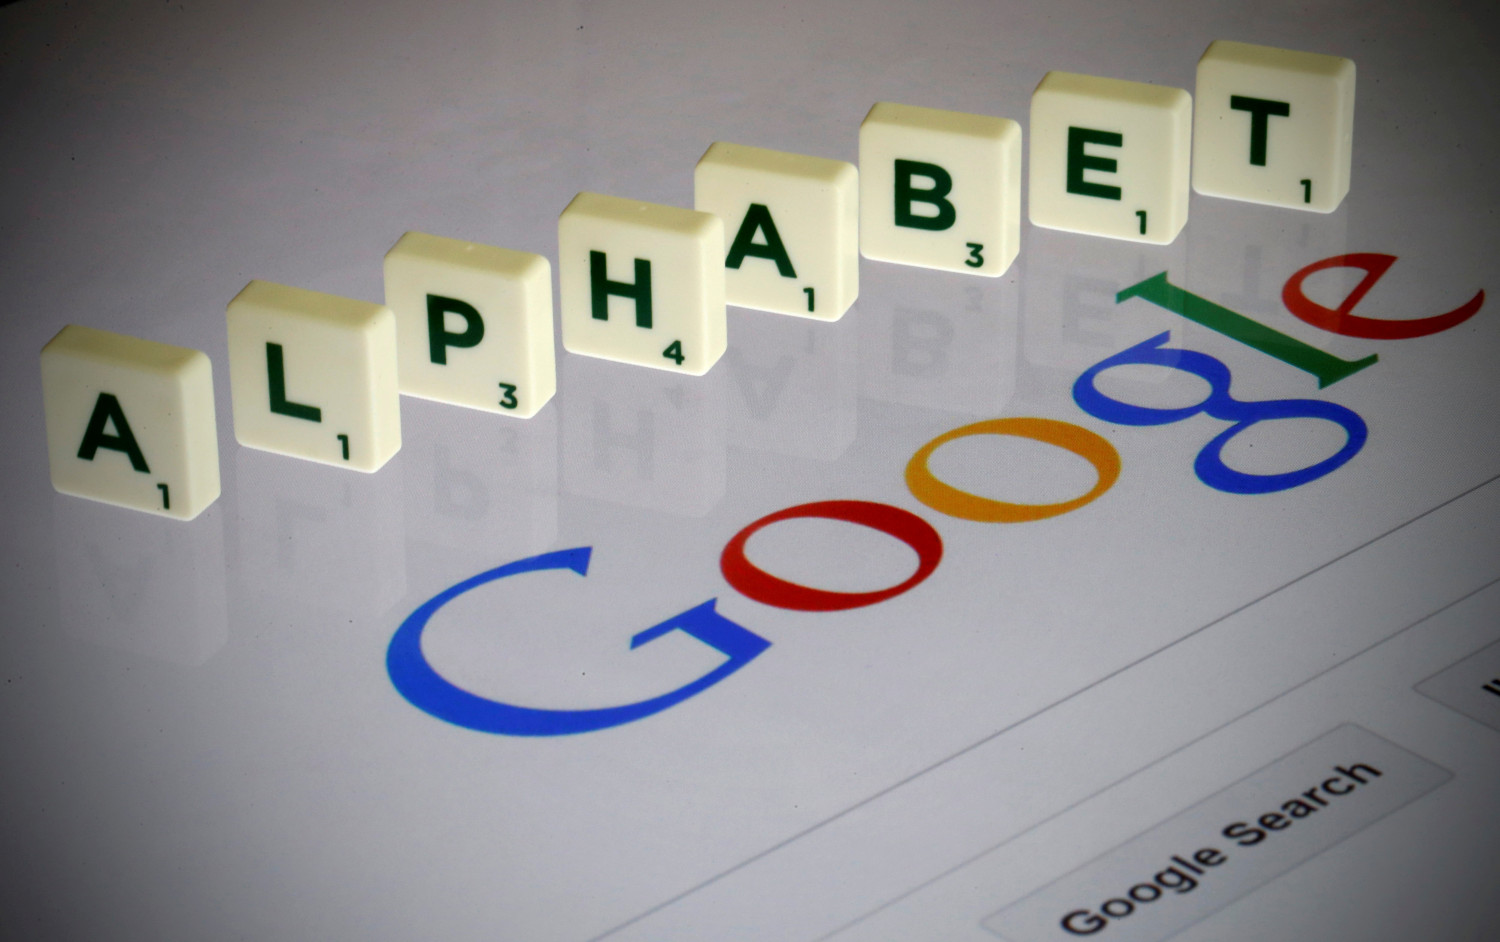 Alphabet (Google) cae tras presentar su último avance en inteligencia artificial